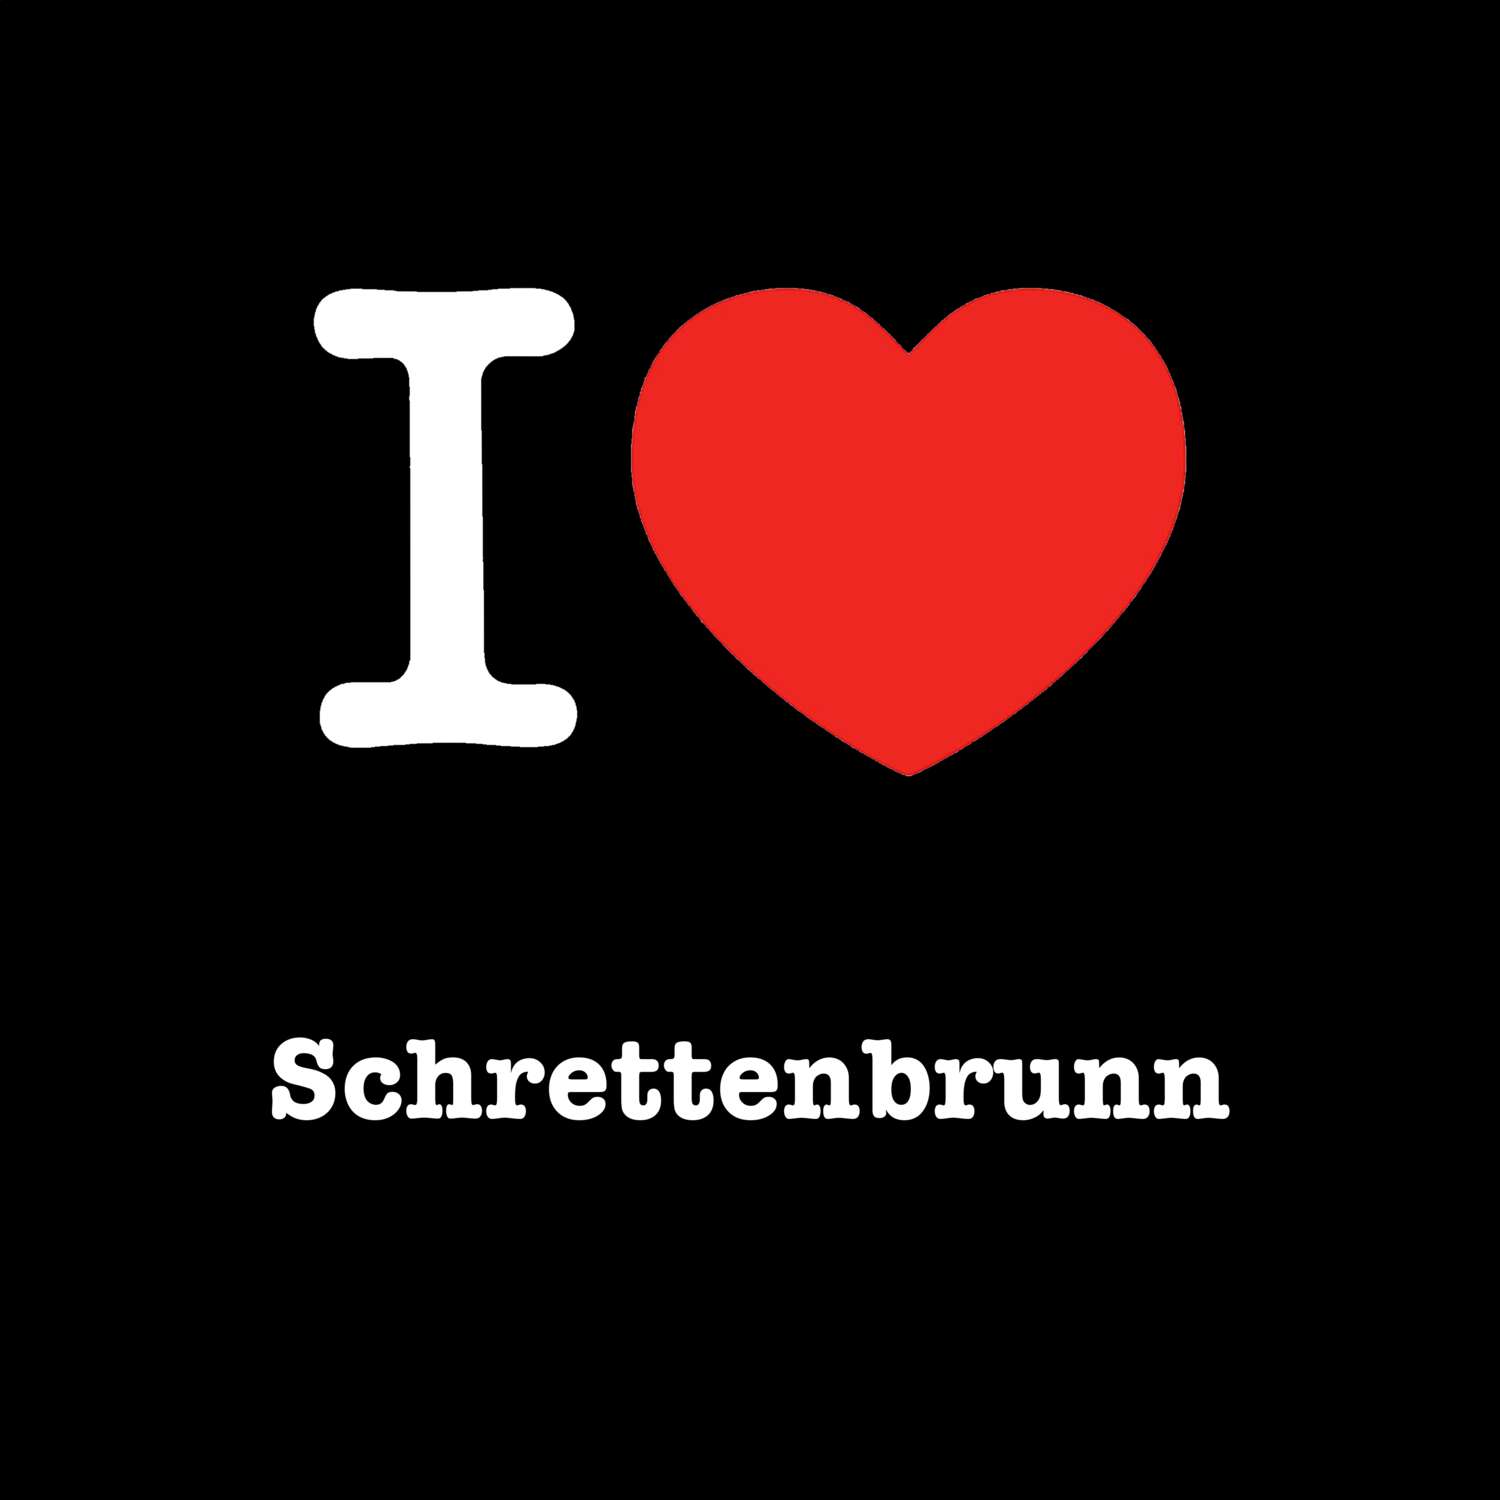 Schrettenbrunn T-Shirt »I love«